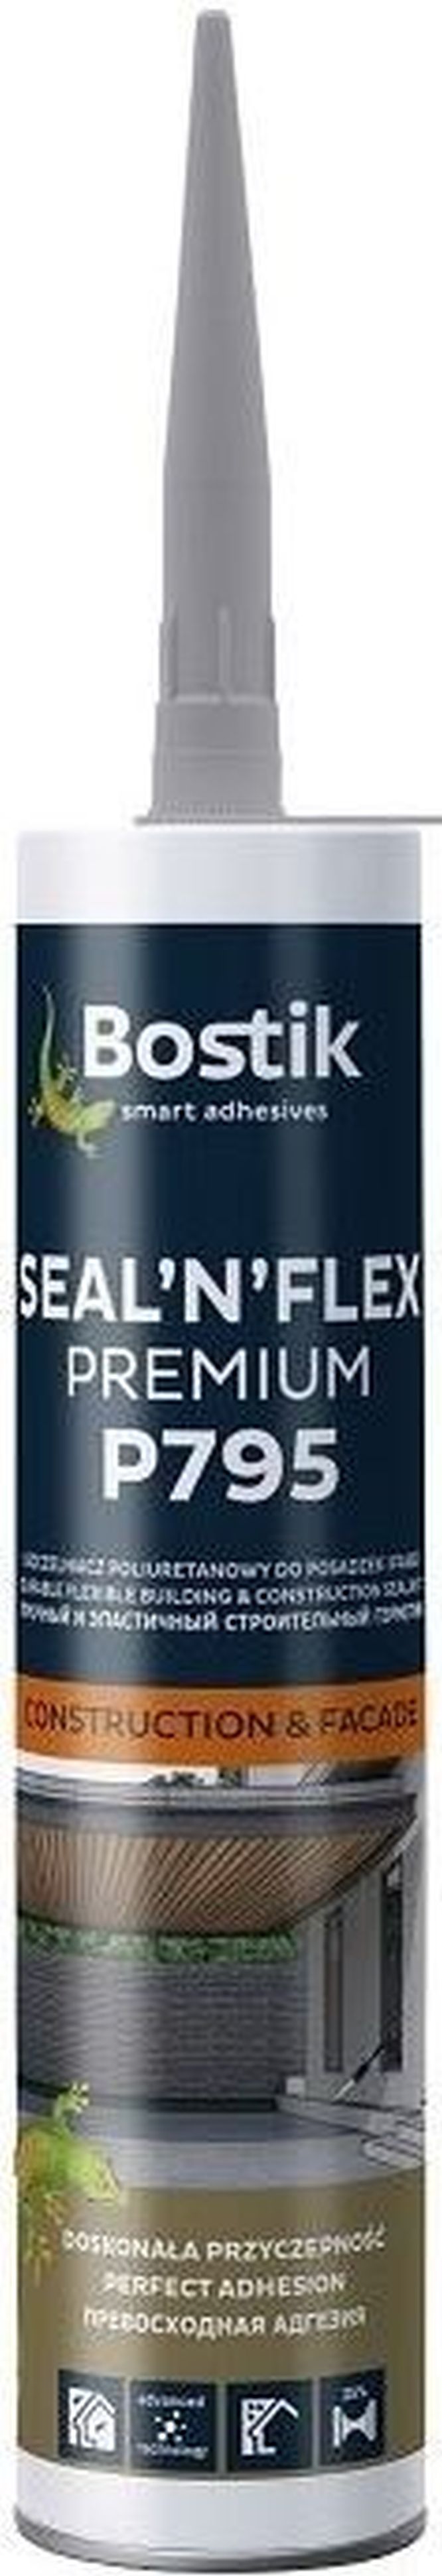 bostik p795 sealnflex premium 2